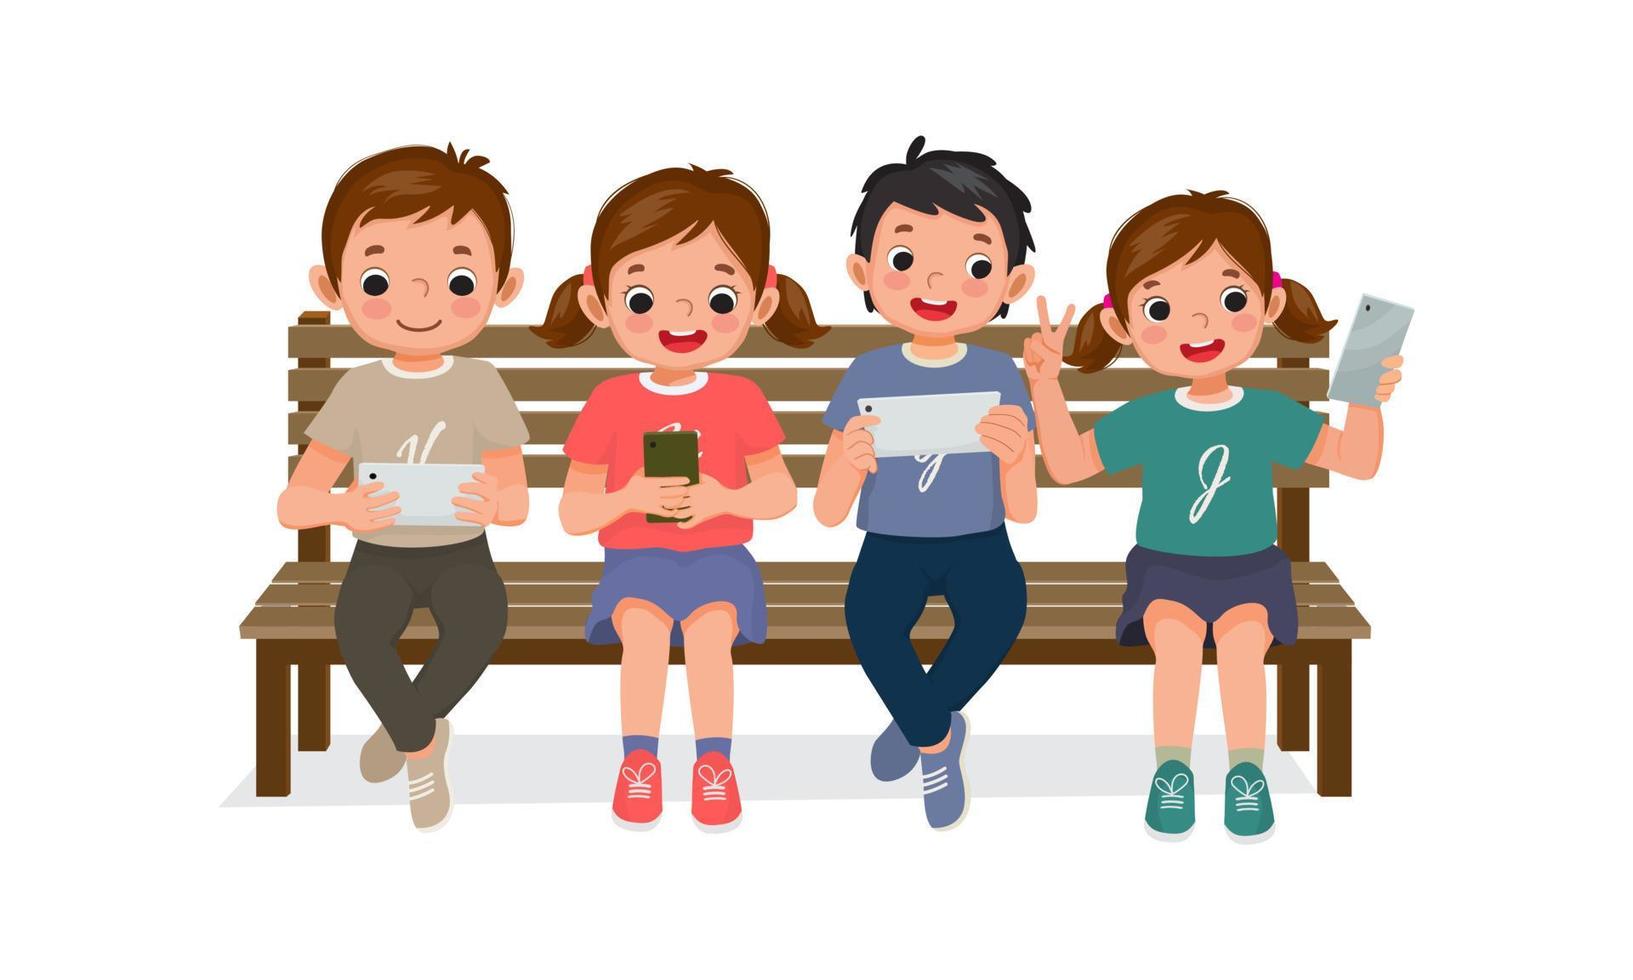 bambini carini seduti su una panchina utilizzando smartphone e tablet digitale che giocano, navigano in Internet, chattano e si fanno selfie con il telefono cellulare vettore